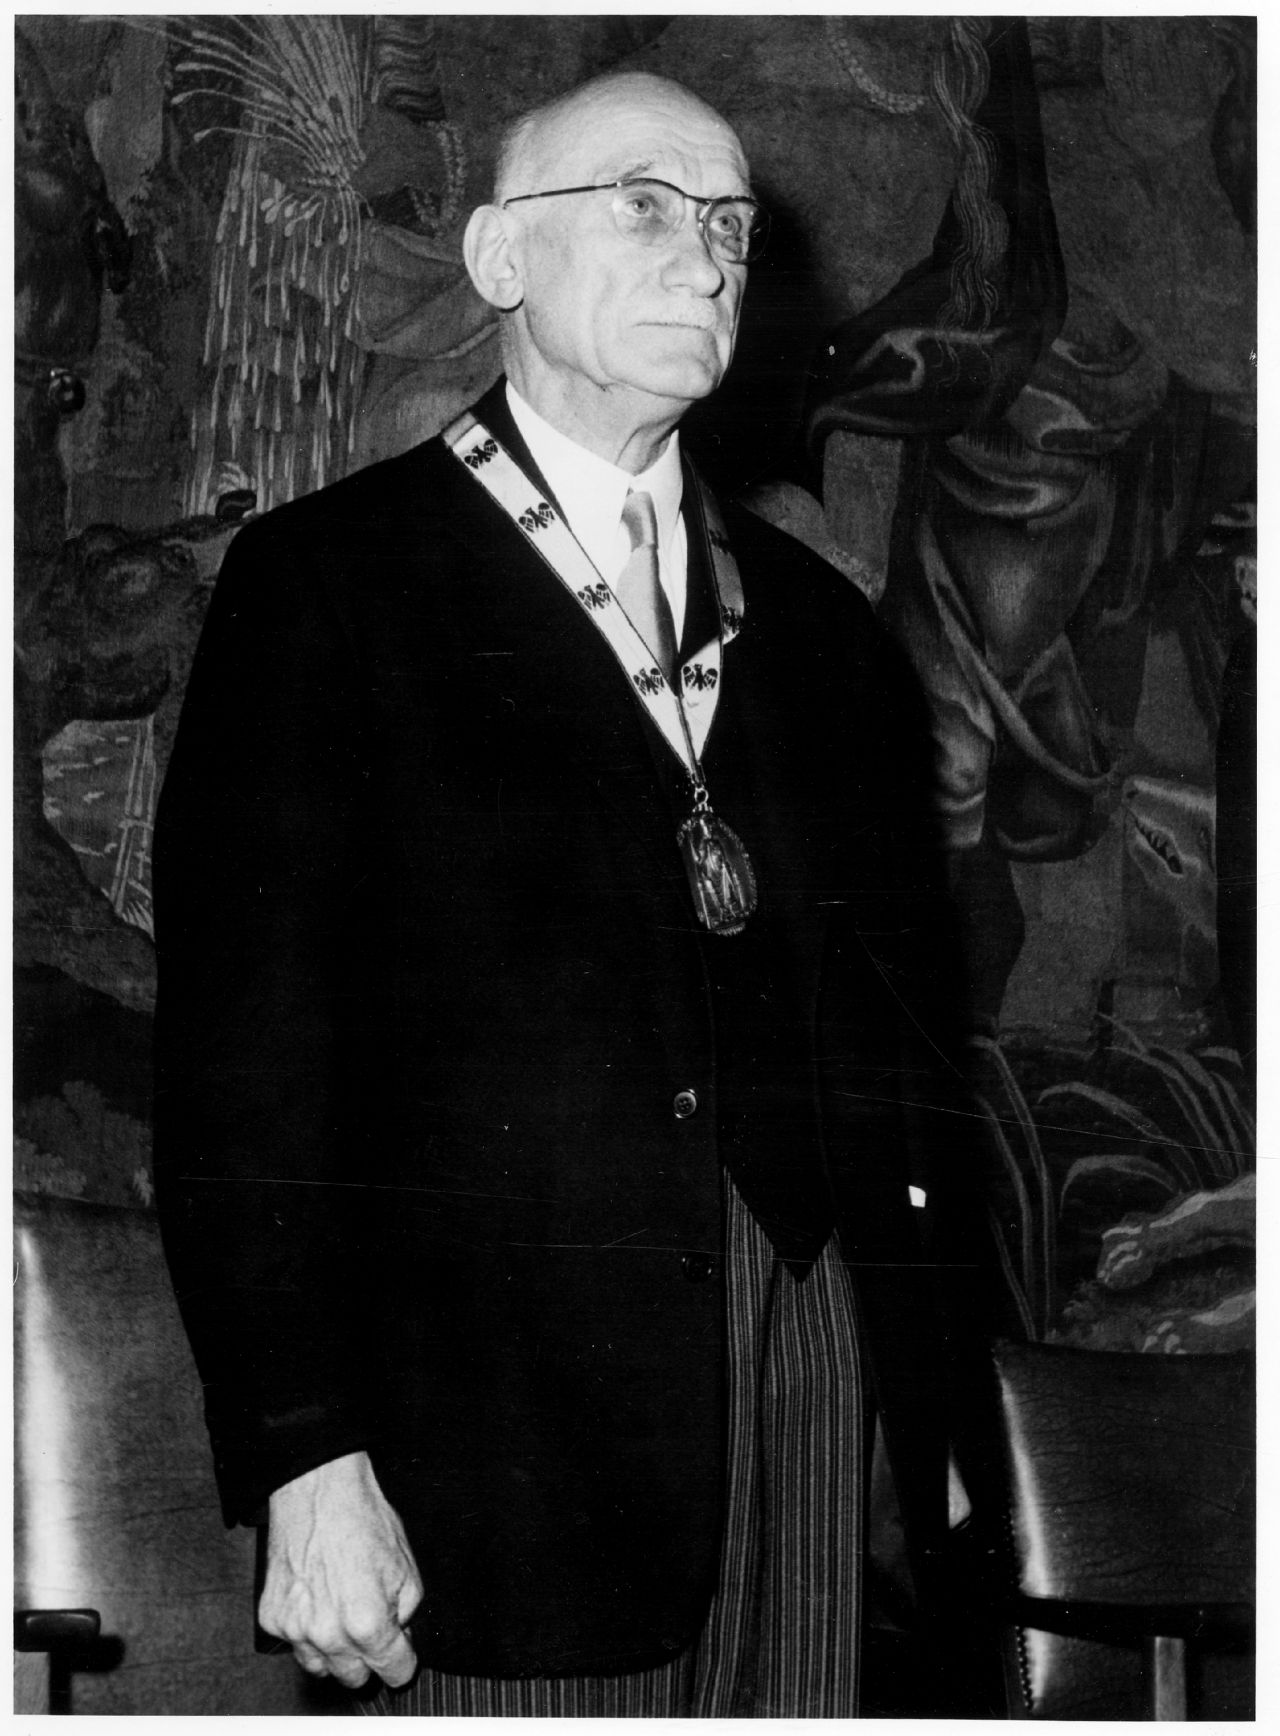 Fotografie des französischen Politikers Robert Schumann, bei den Feierlichkeiten zur Verleihung des Karlspreises, 1958.